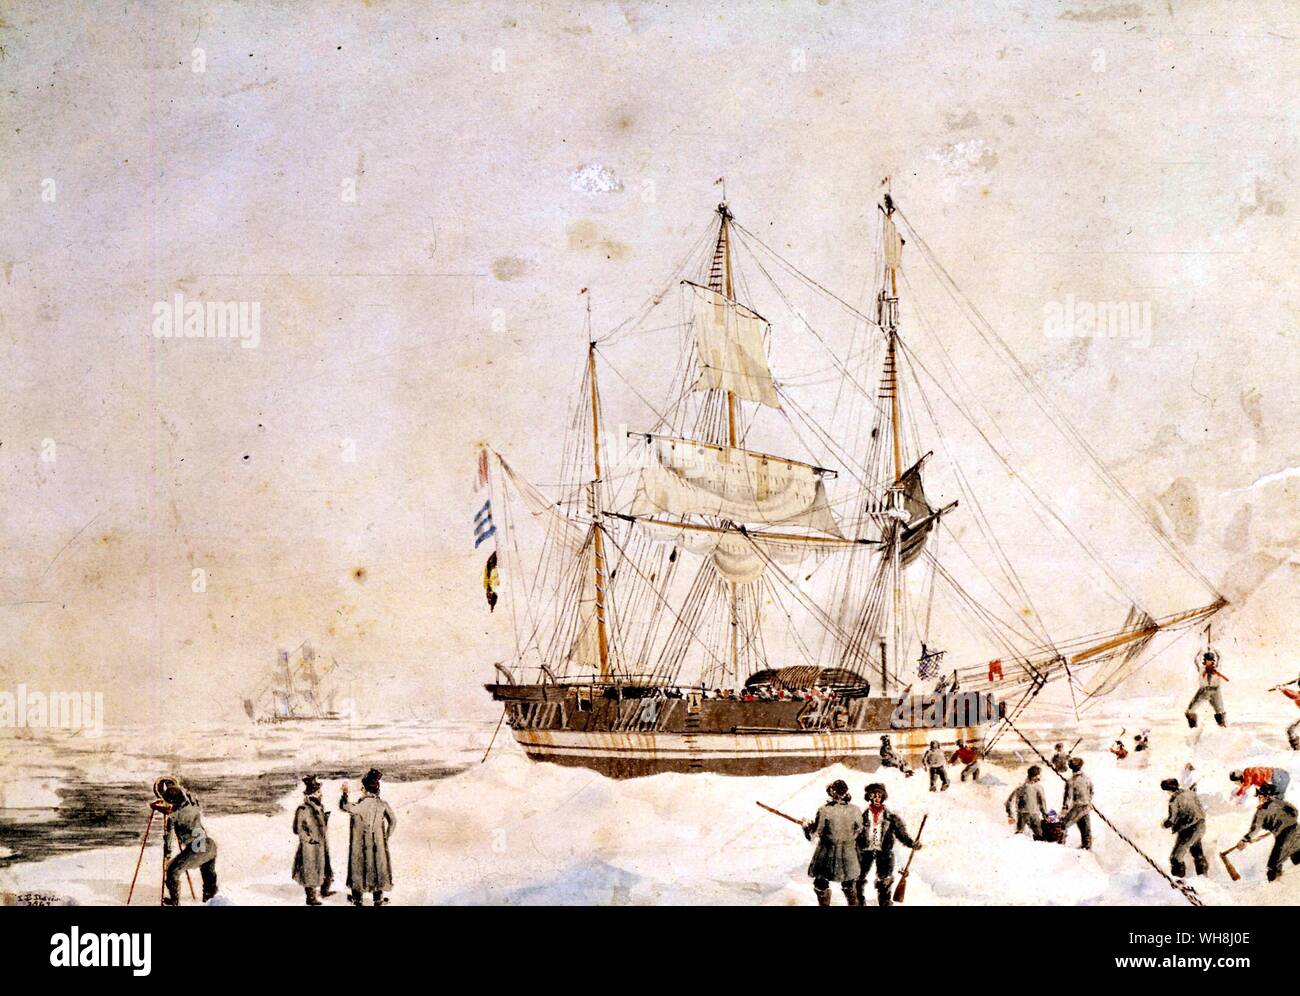 Détail de la résolution de battre à travers la glace, par John Webber, (1752-1793). Antarctique : le dernier continent par Ian Cameron, page 38.. La résolution a été responsable de certains des exploits remarquables et était de prouver l'un des grands navires historiques. Elle a été le premier navire à traverser le cercle antarctique (17 janvier 1773) et traversé deux fois plus sur le voyage. En conséquence, la résolution a joué un rôle important dans la preuve de Dalrymple's Terra Australis Incognita (Continent du Sud) est un mythe. Lors de son troisième voyage, le capitaine James Cook a traversé le cercle arctique dans la résolution le 17 août 1778. Banque D'Images